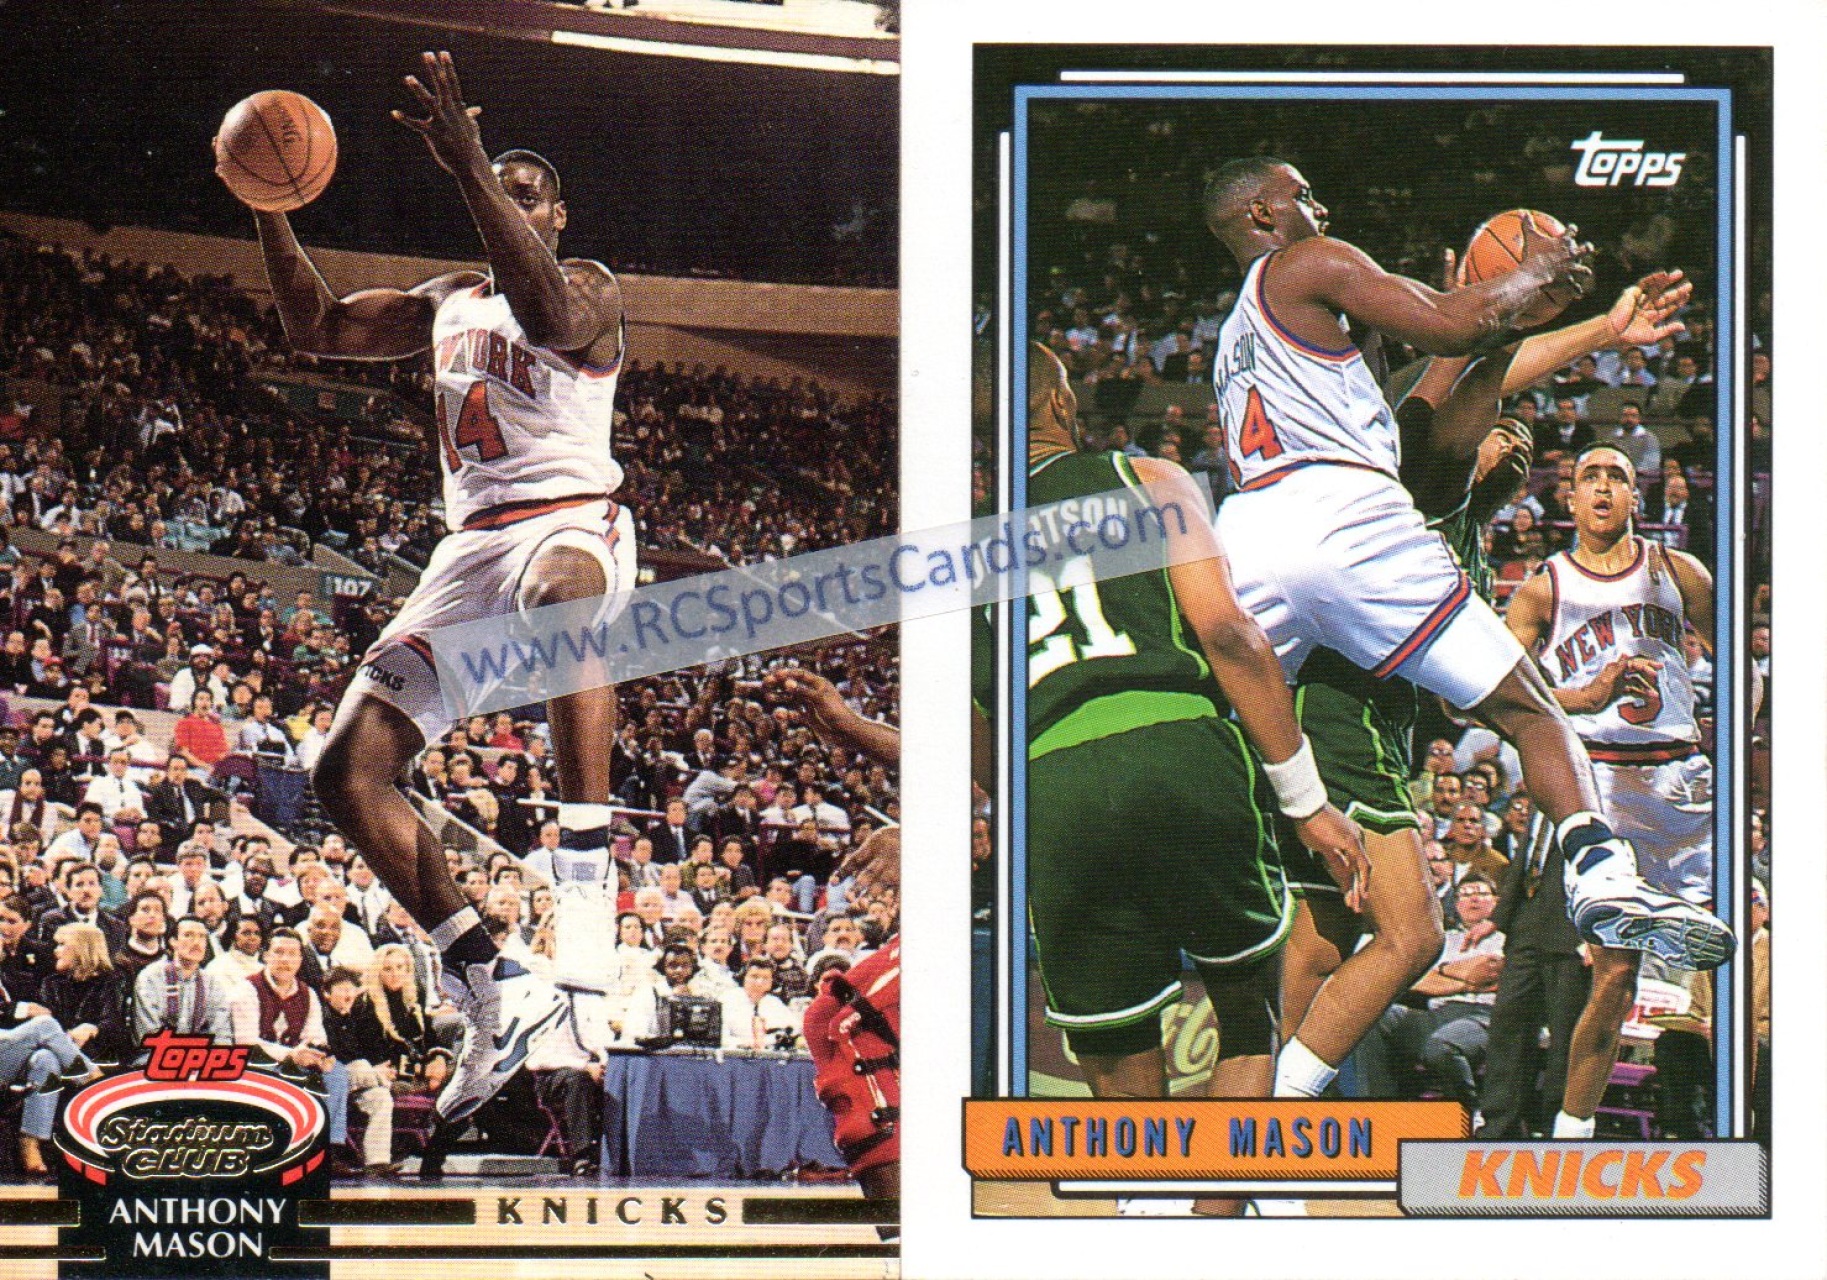 NBA Swingman Jersey Reverse Fleece New York Knicks 1992-93 Patrick